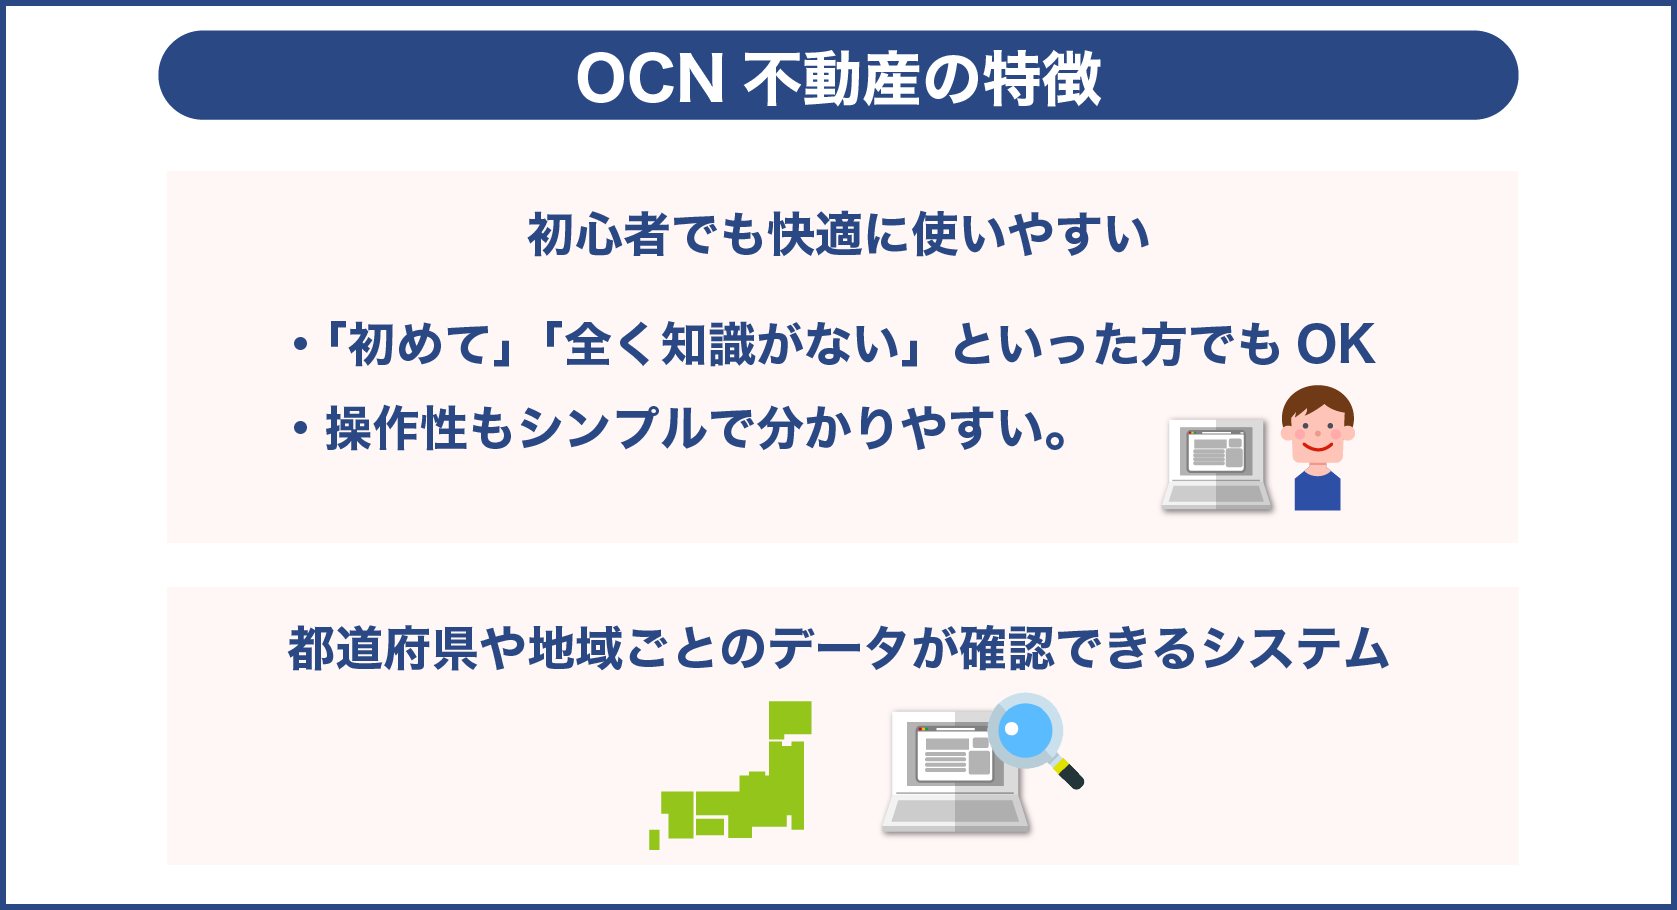 OCN 不動産の特徴